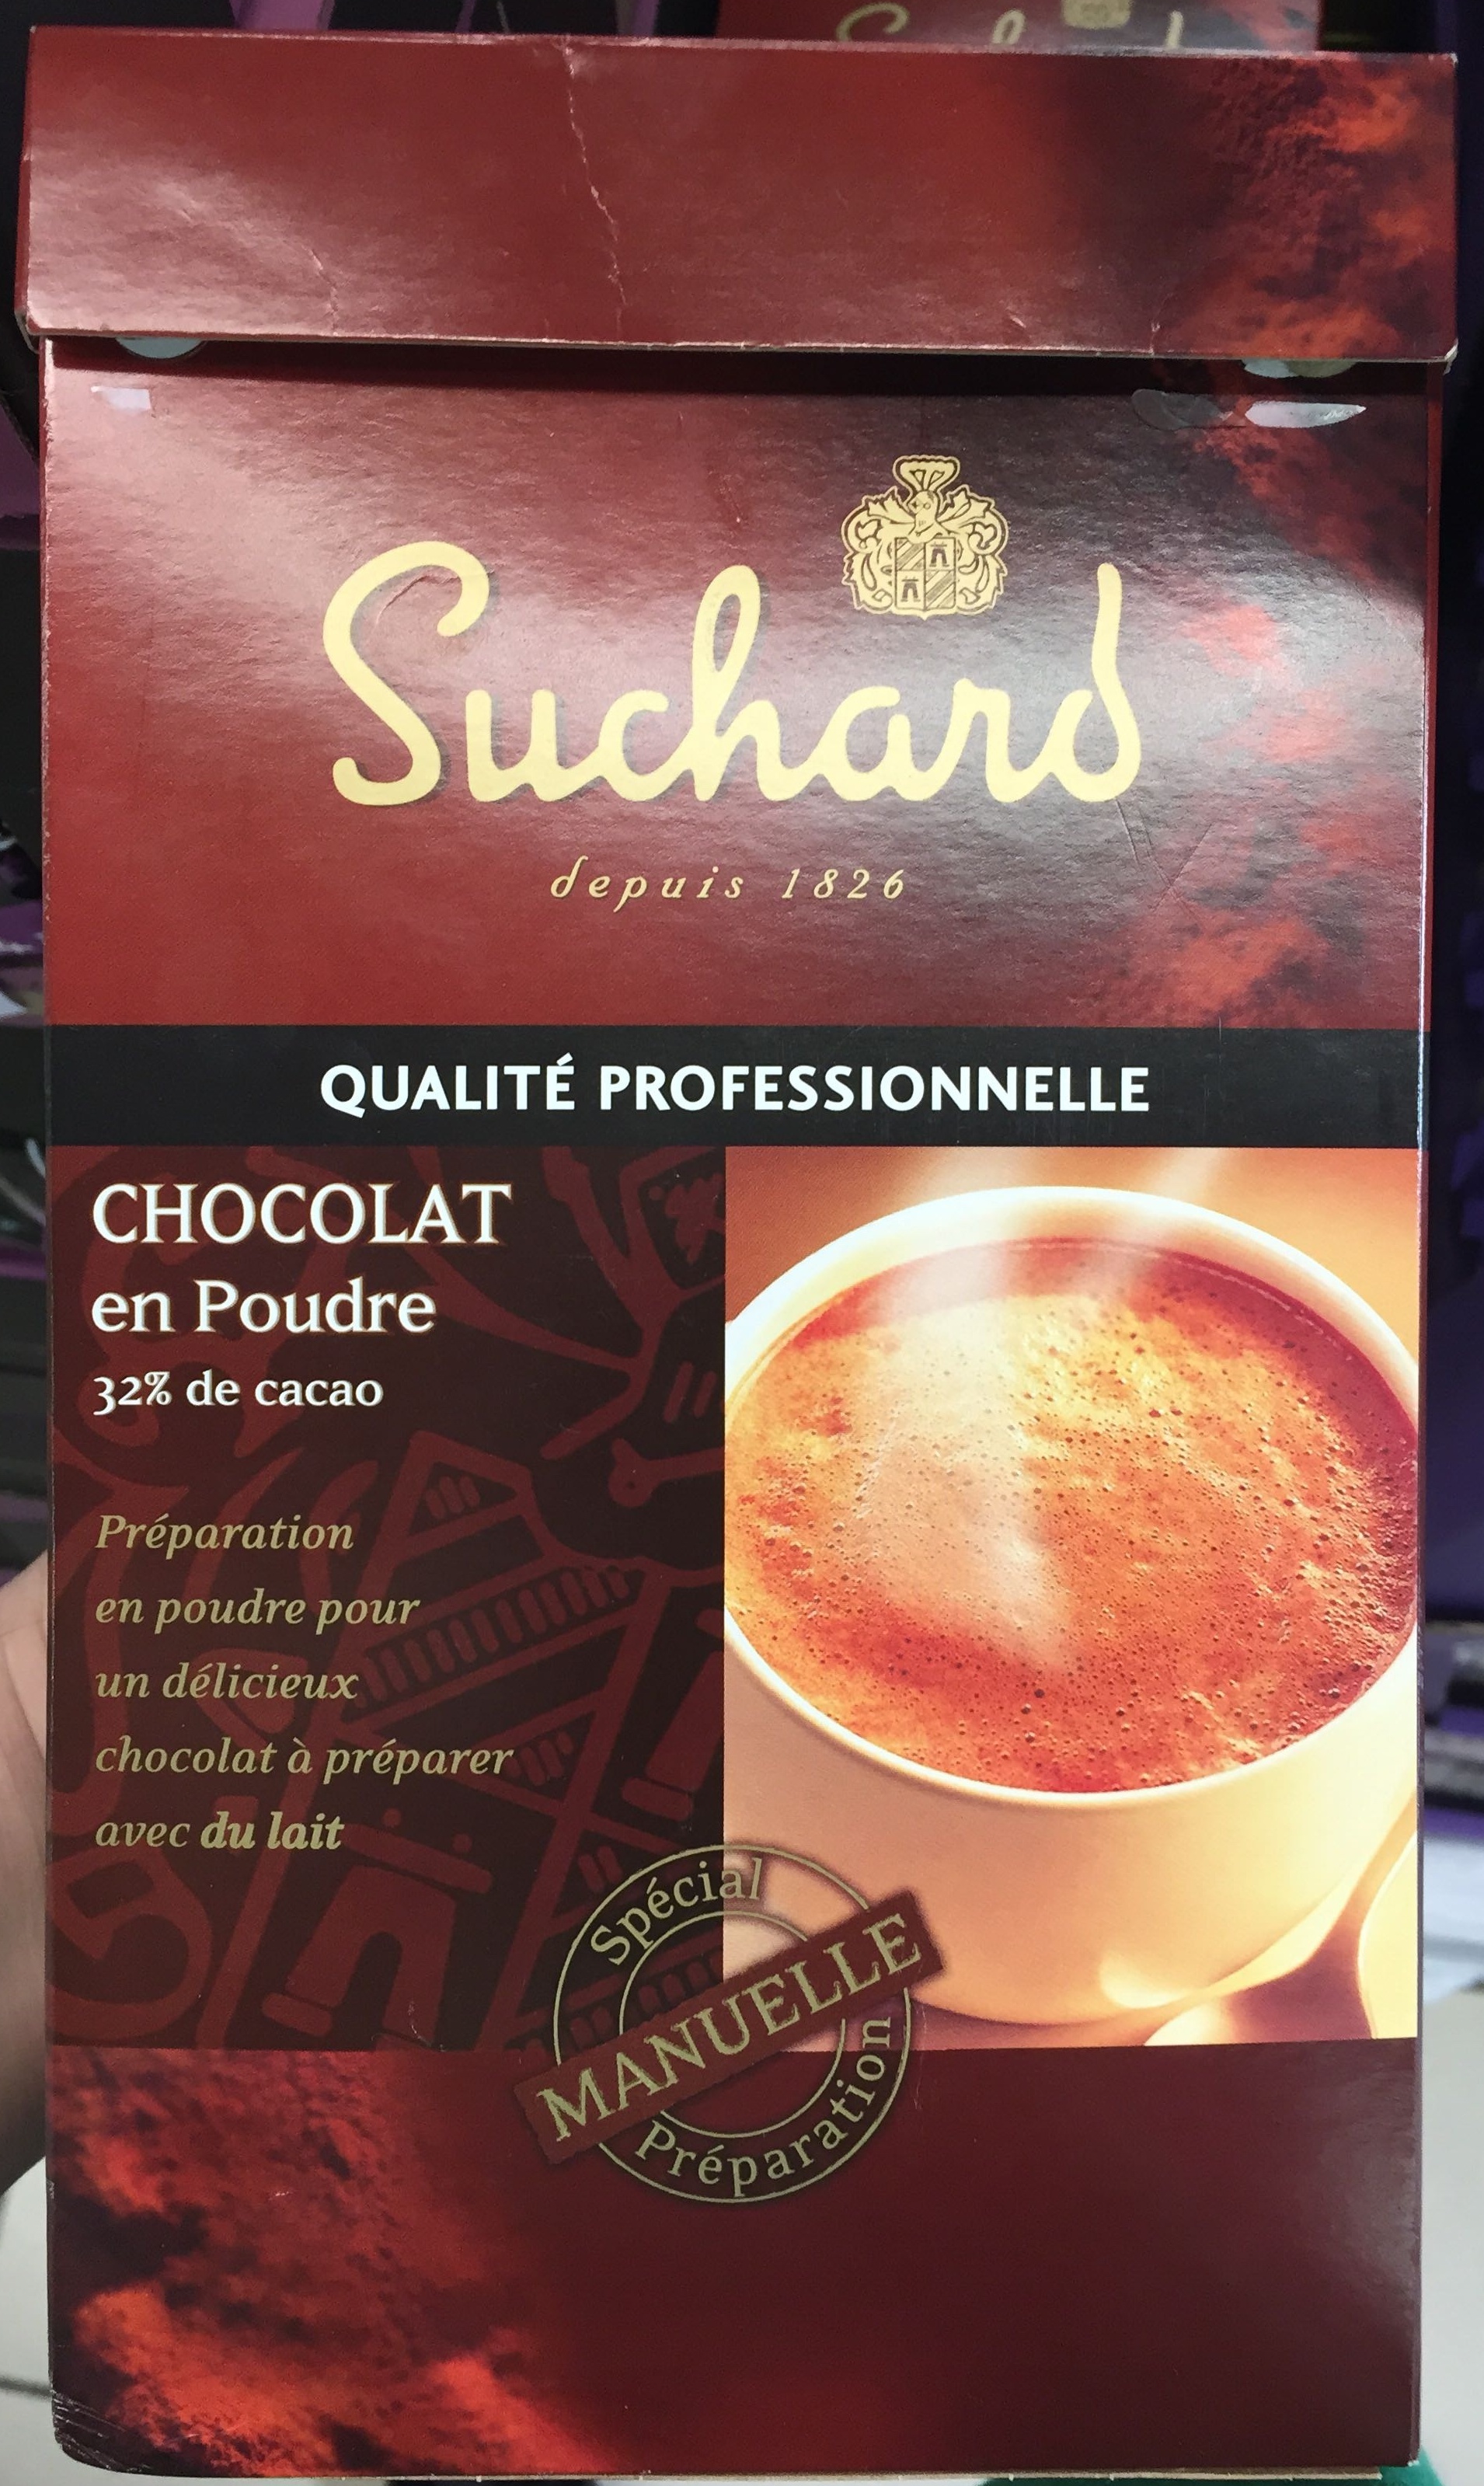 Chocolat en poudre qualité professionnelle - Produit